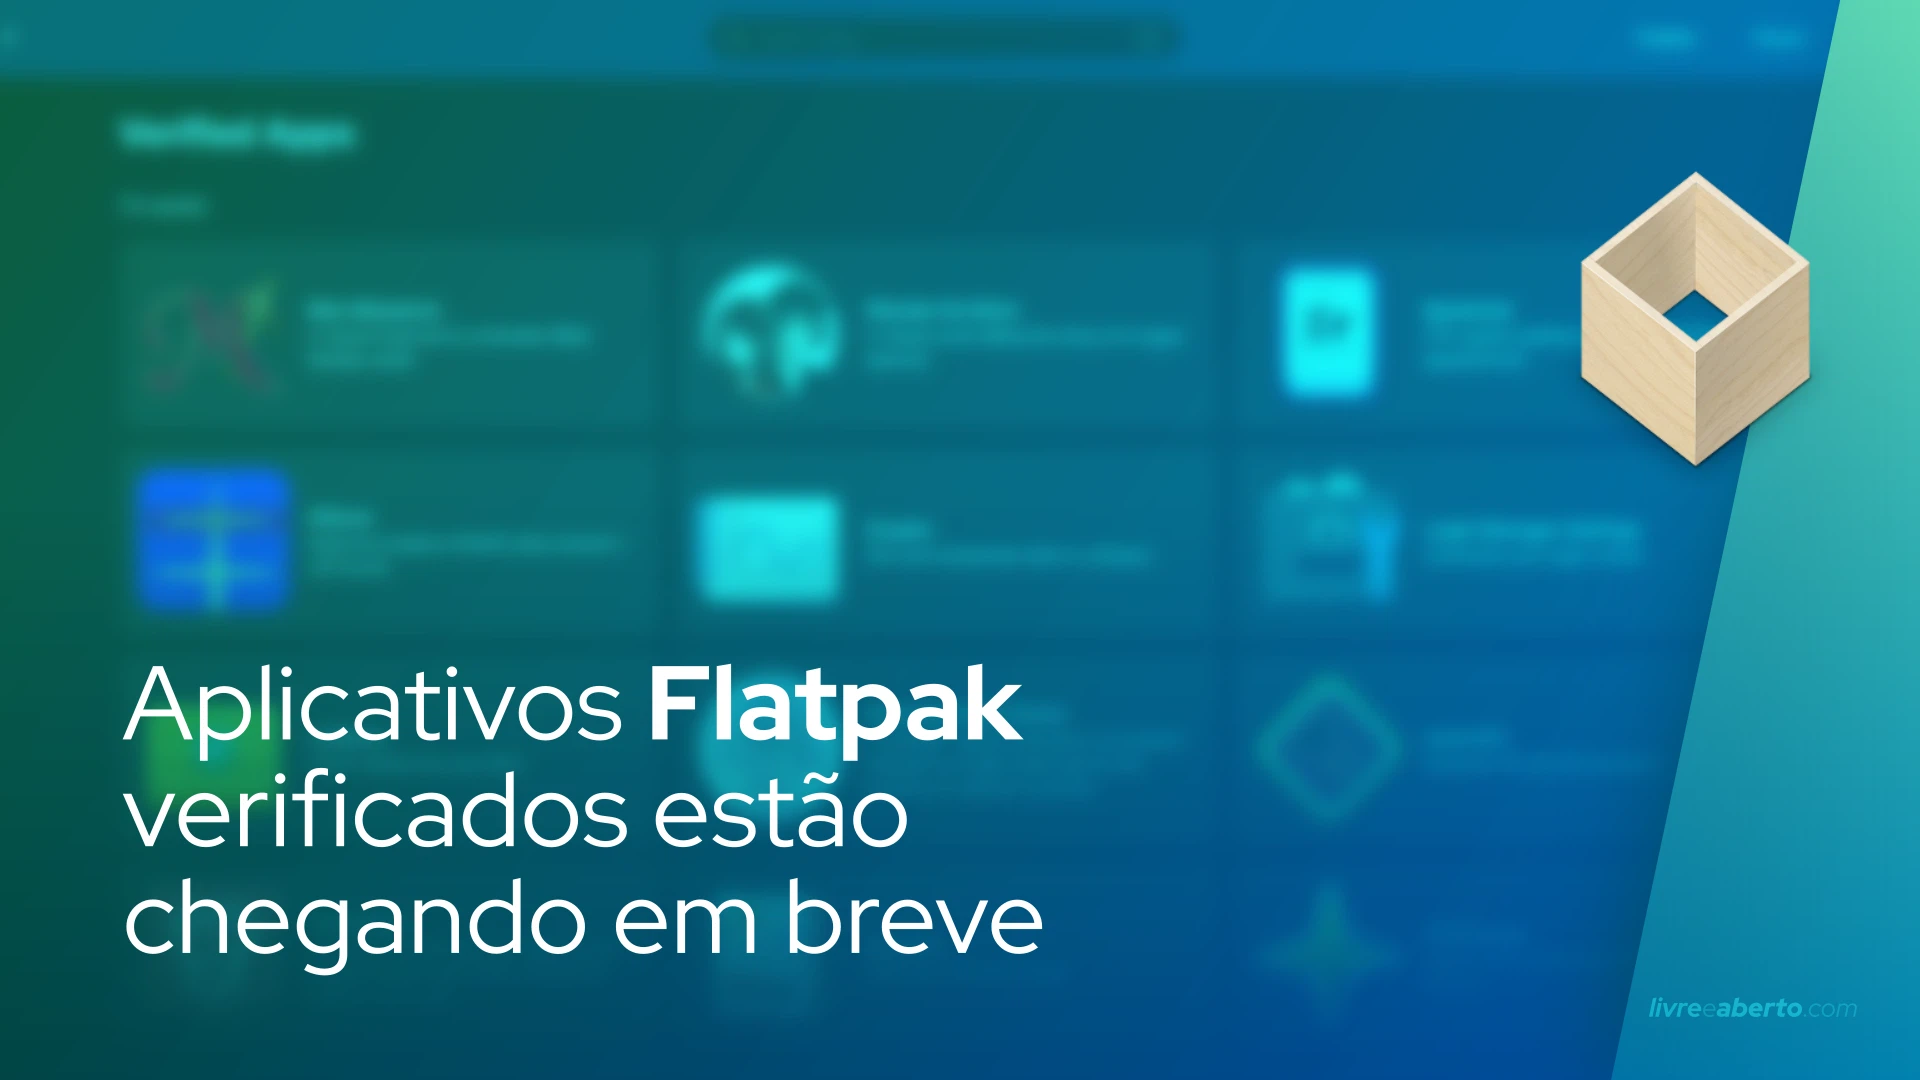 Aplicativos Flatpak verificados estão chegando em breve